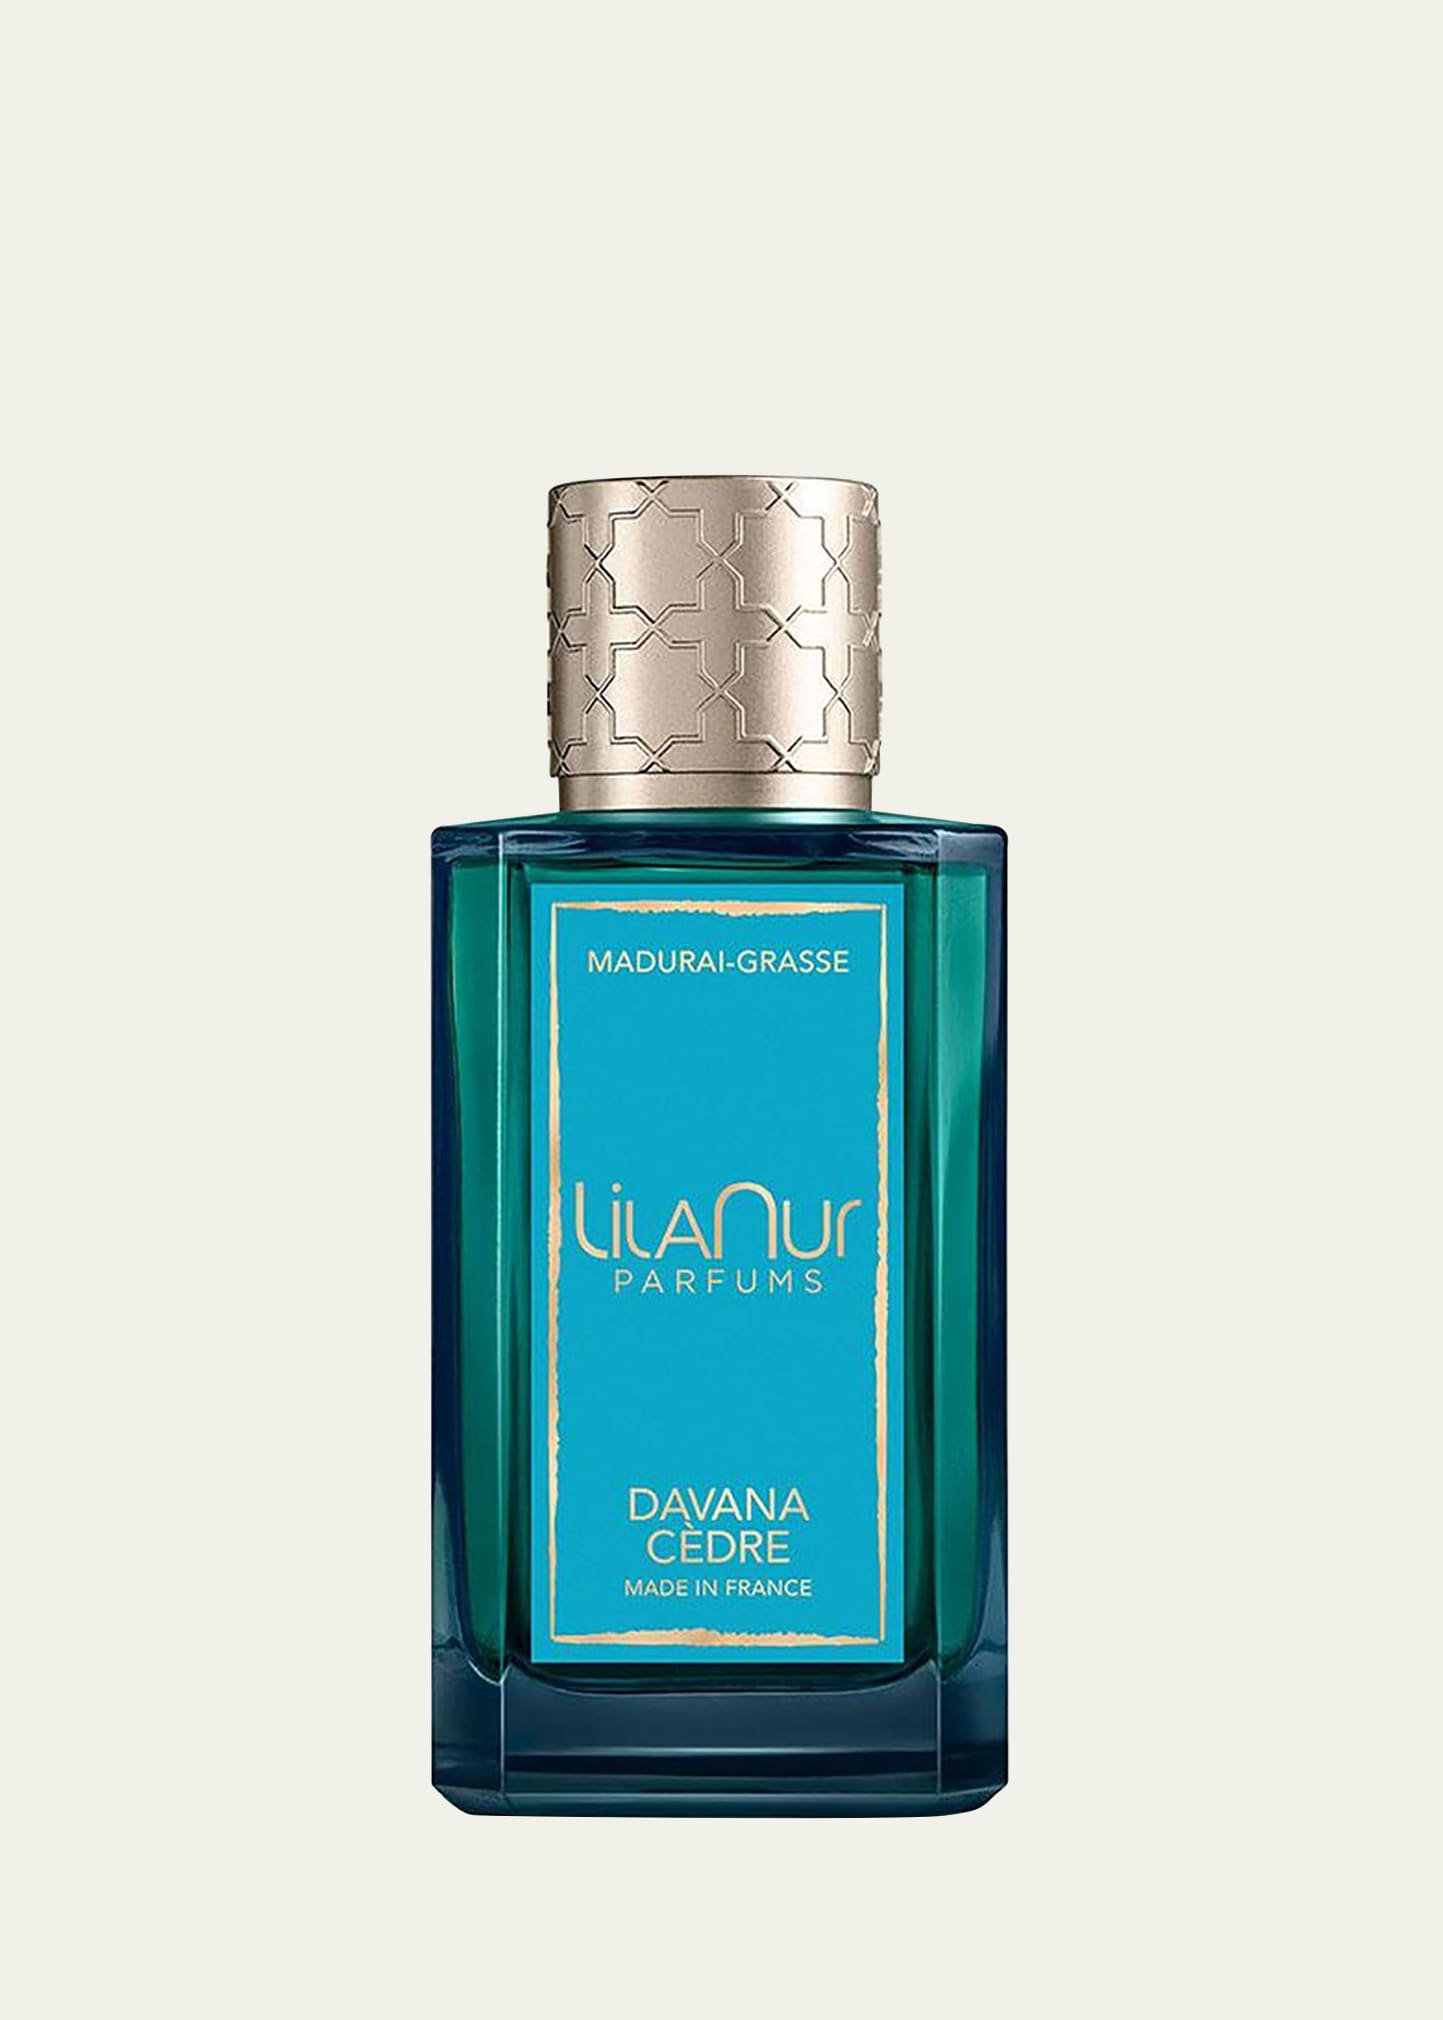 LilaNur Parfums Davana Cèdre Eau de Parfum, 3.4 oz.